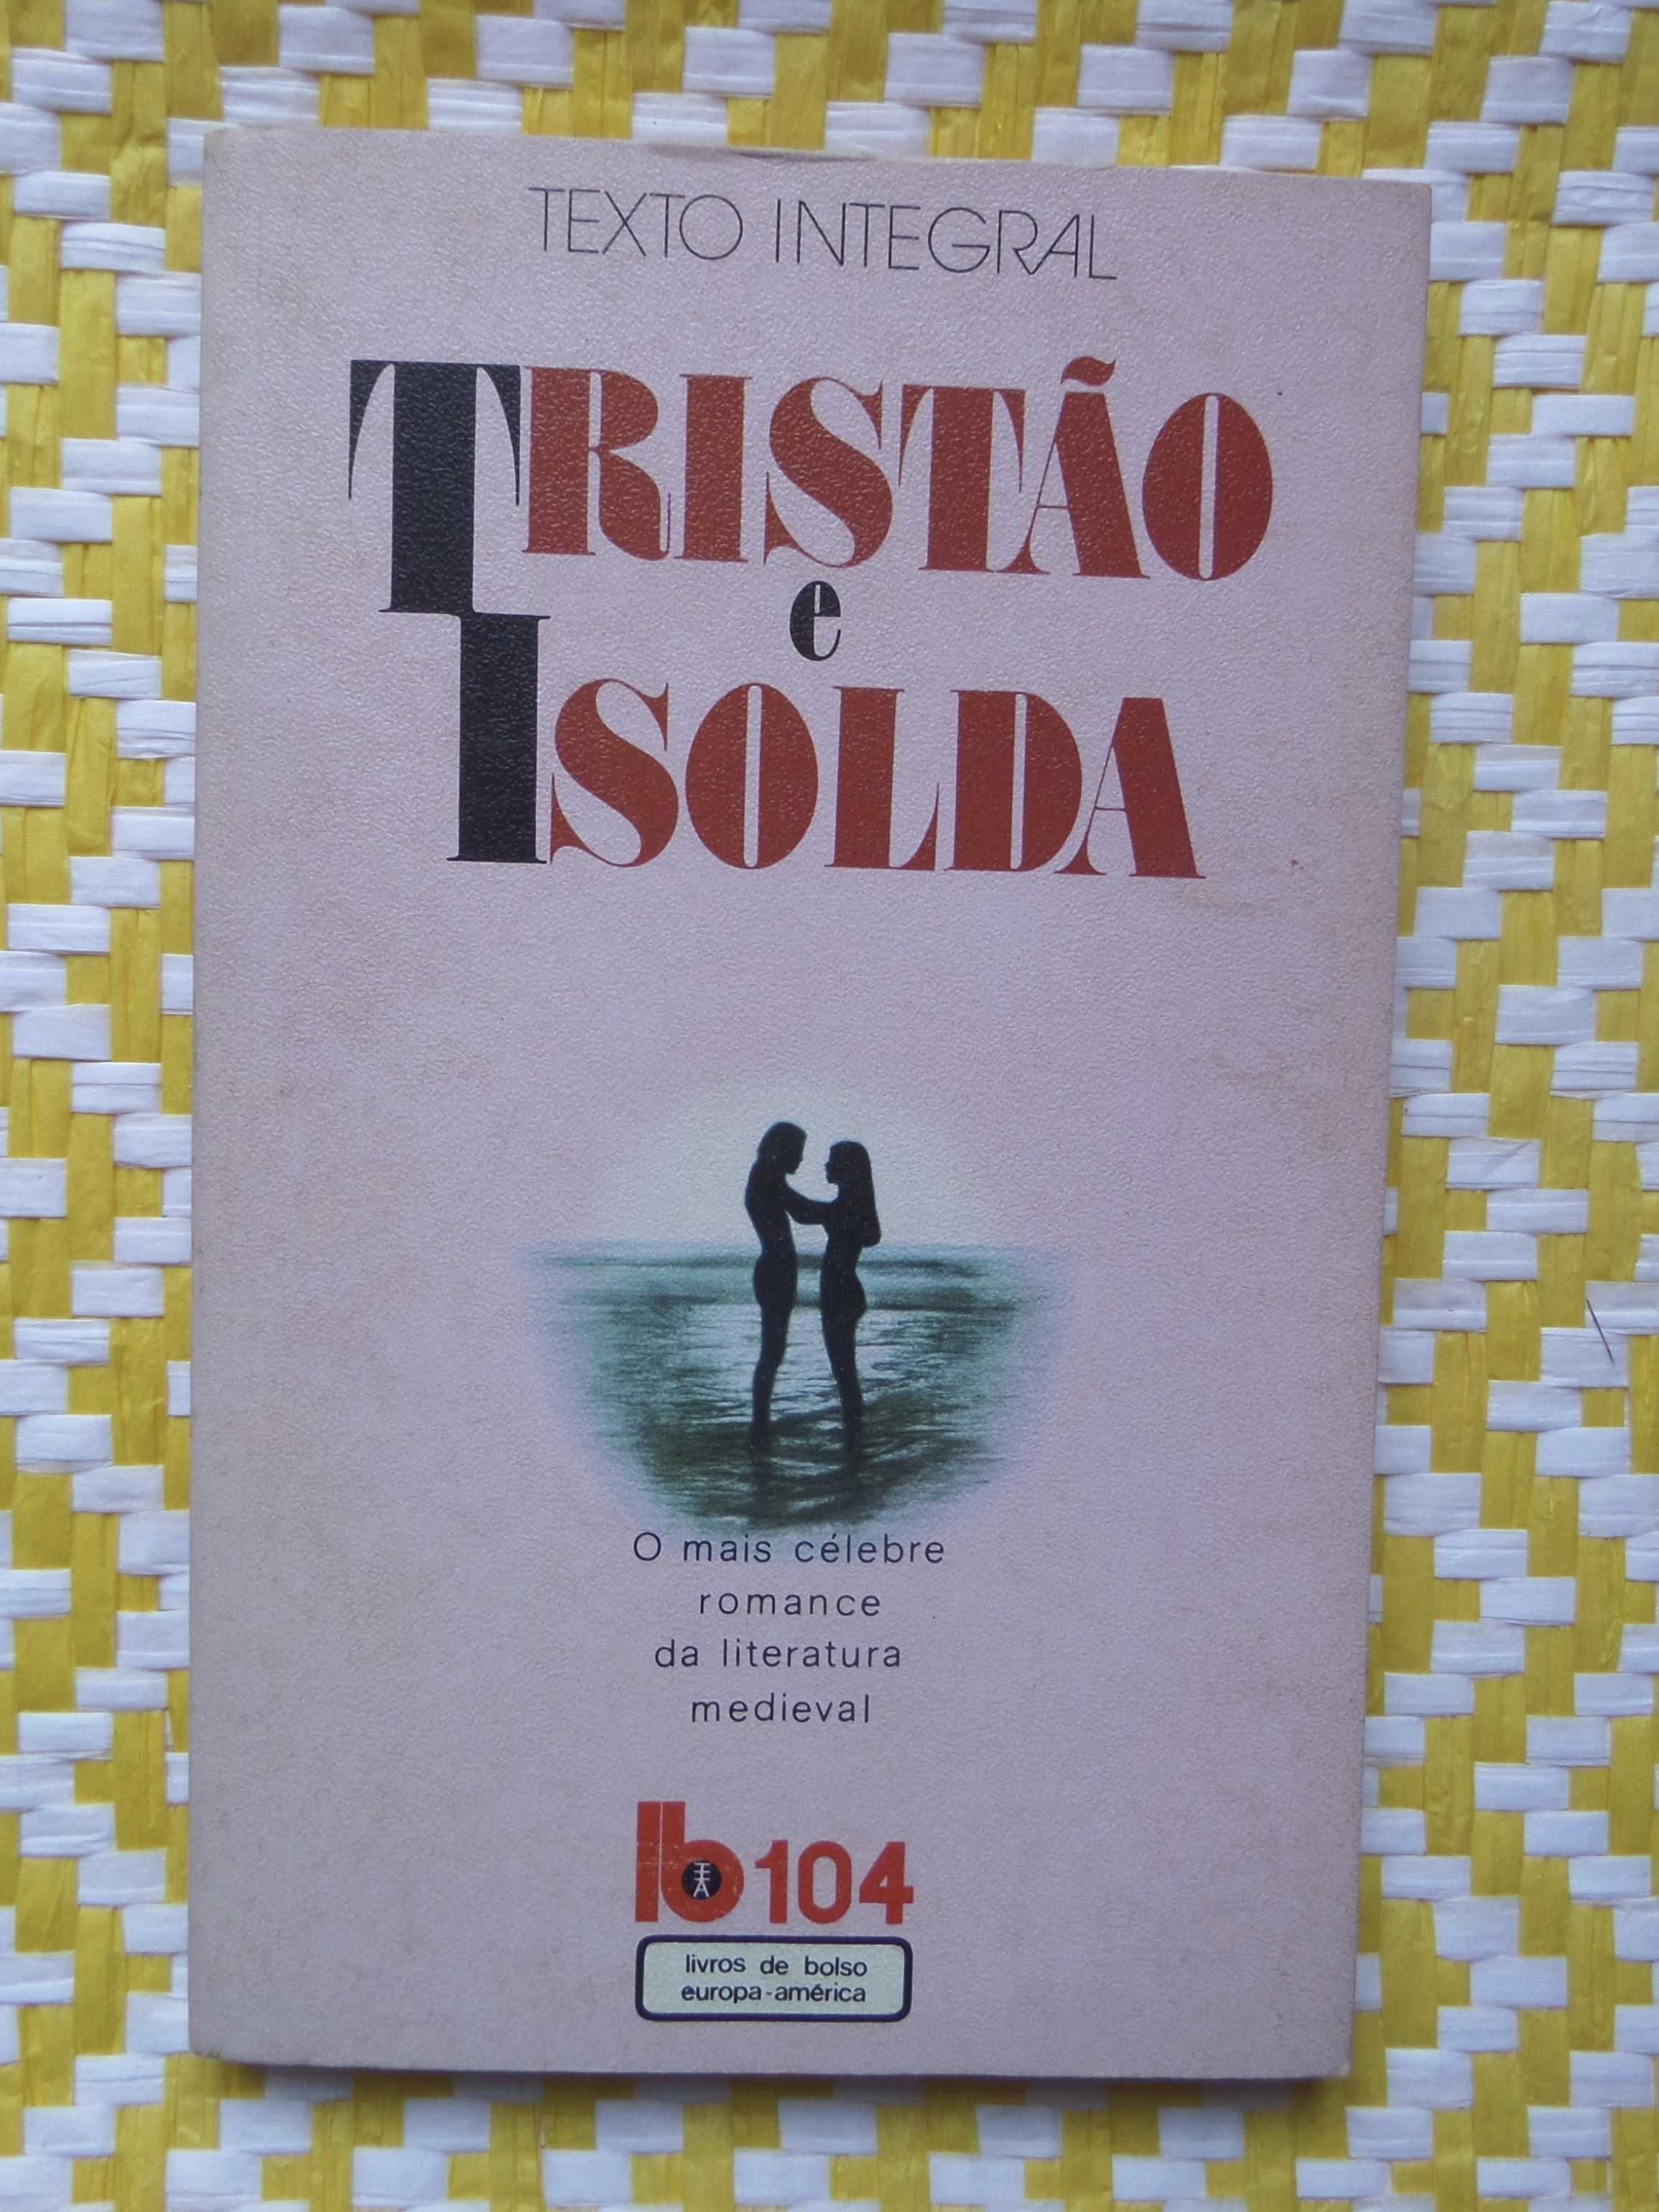 Tristão e Isolda
Anónimo(s)